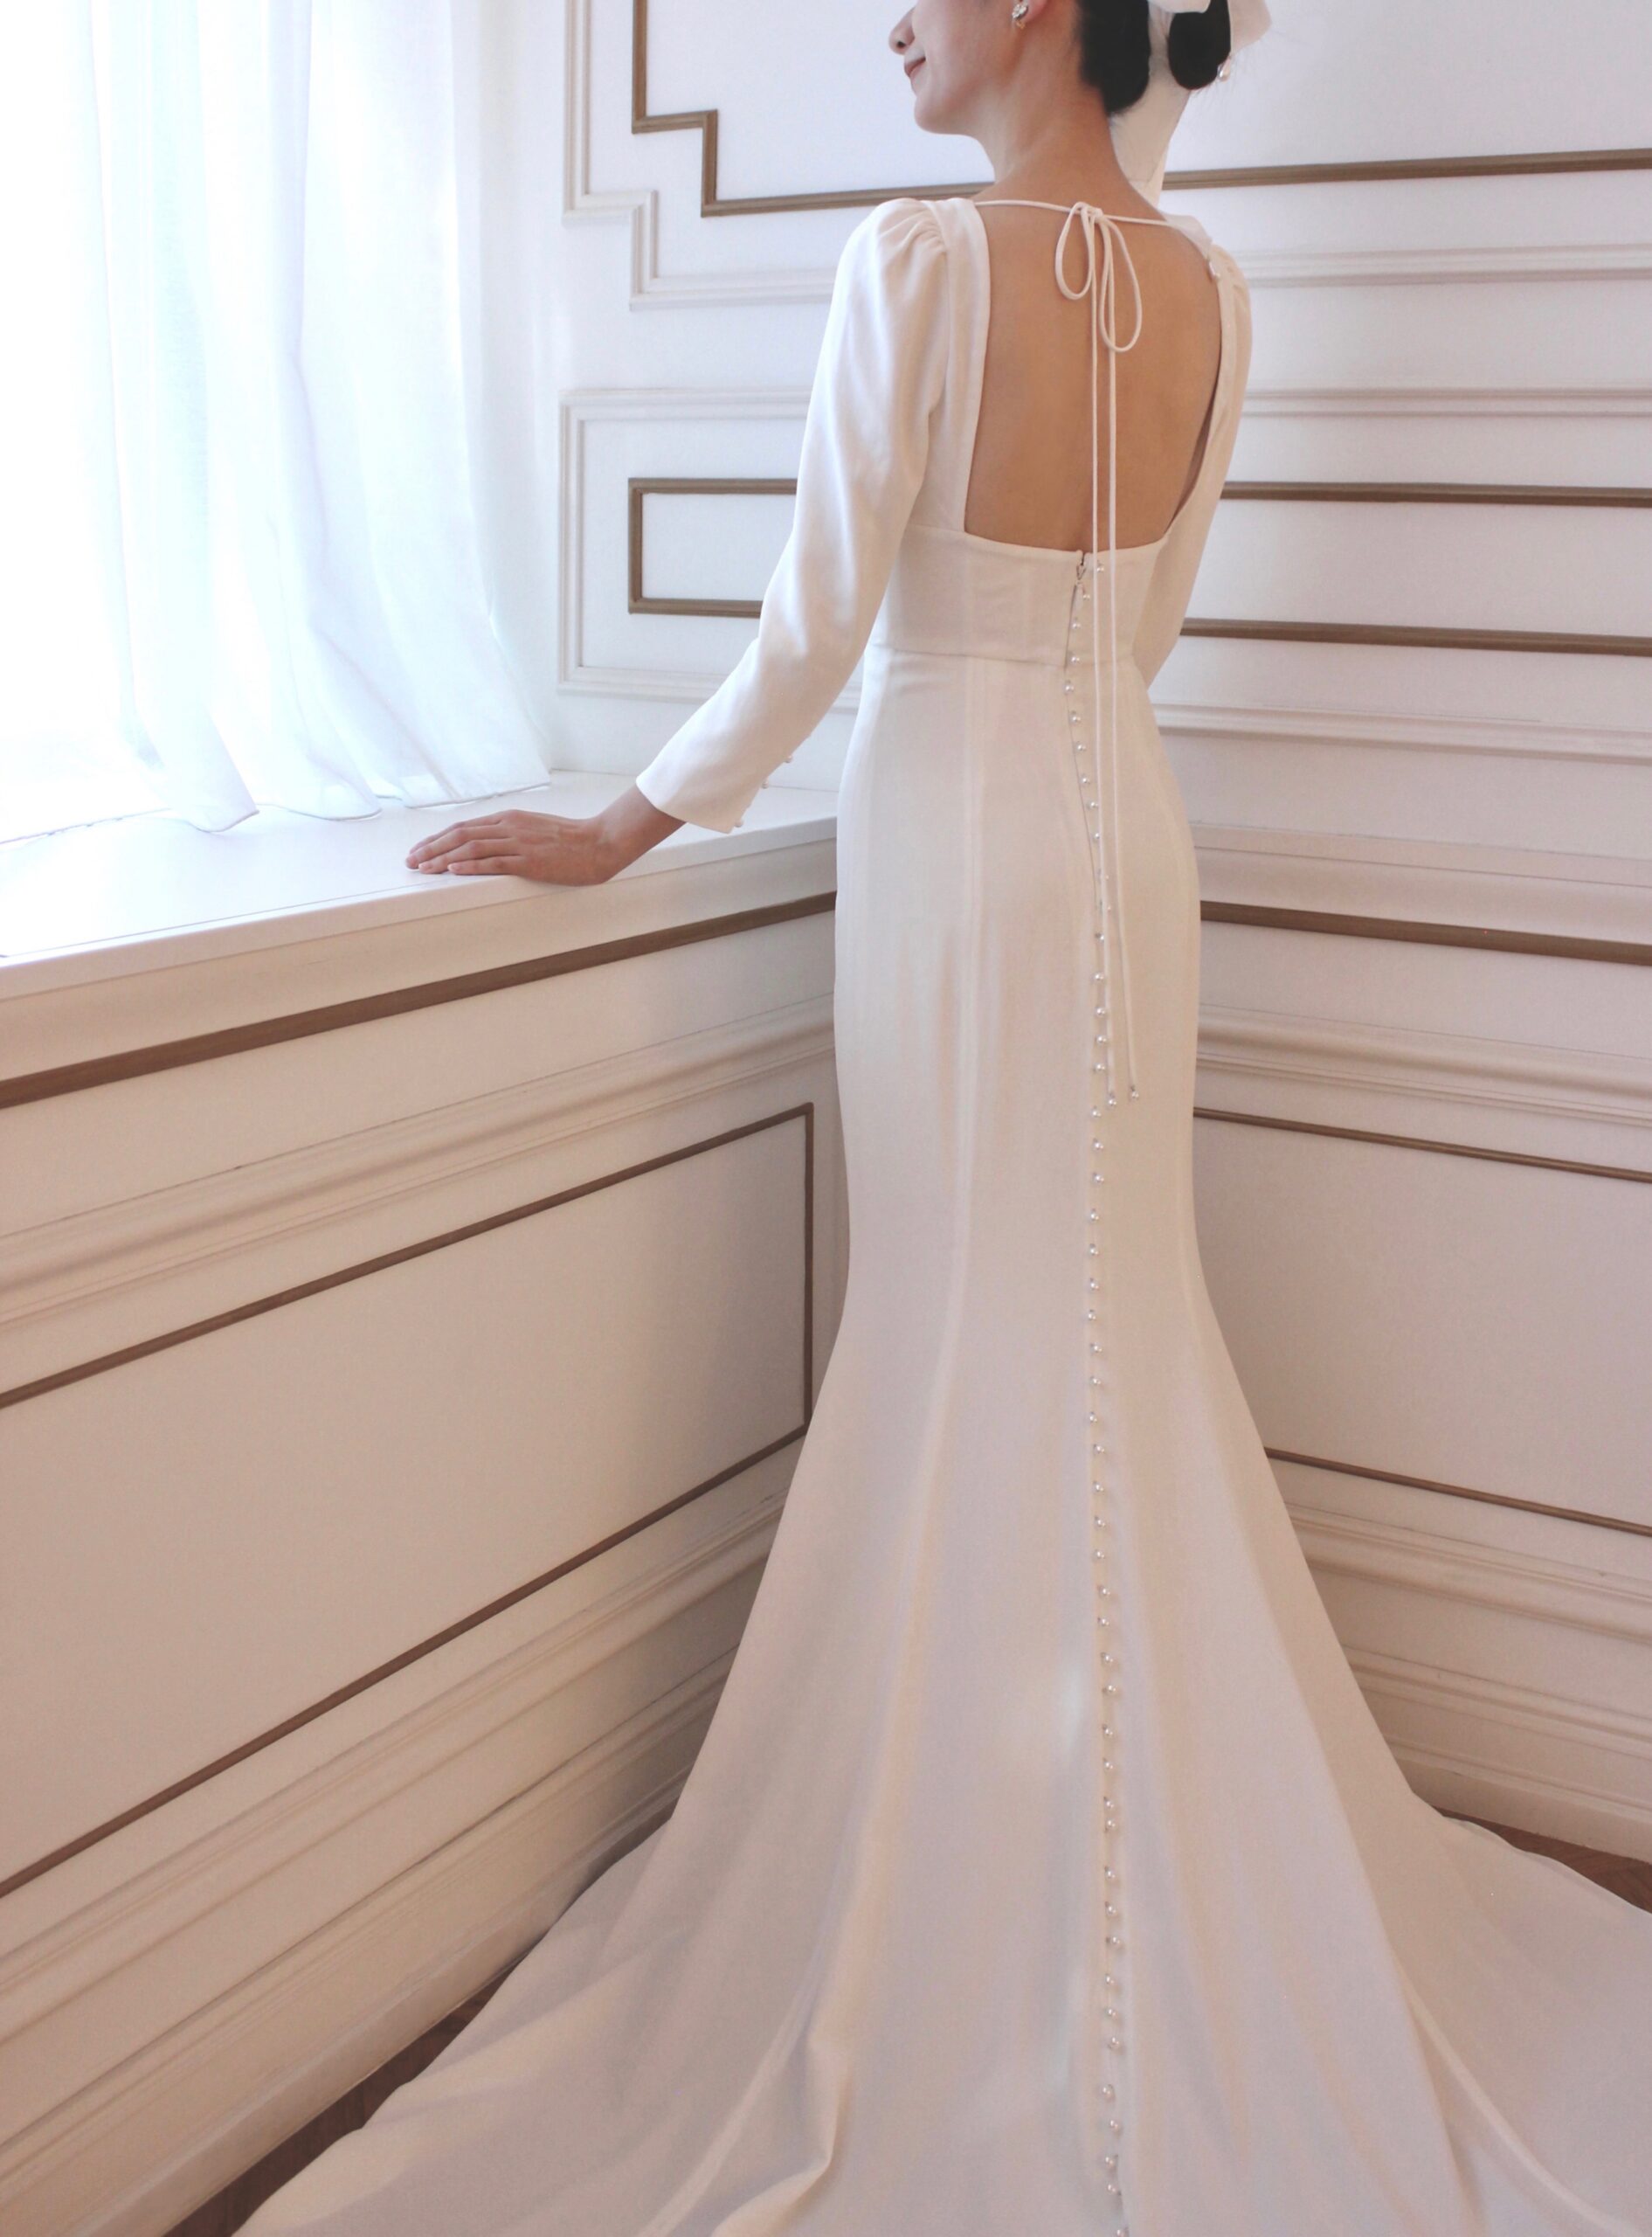 モニーク ルイリエの長く広がるトレーンが印象的な上品でエレガントな細身でシンプルなウェディングドレス